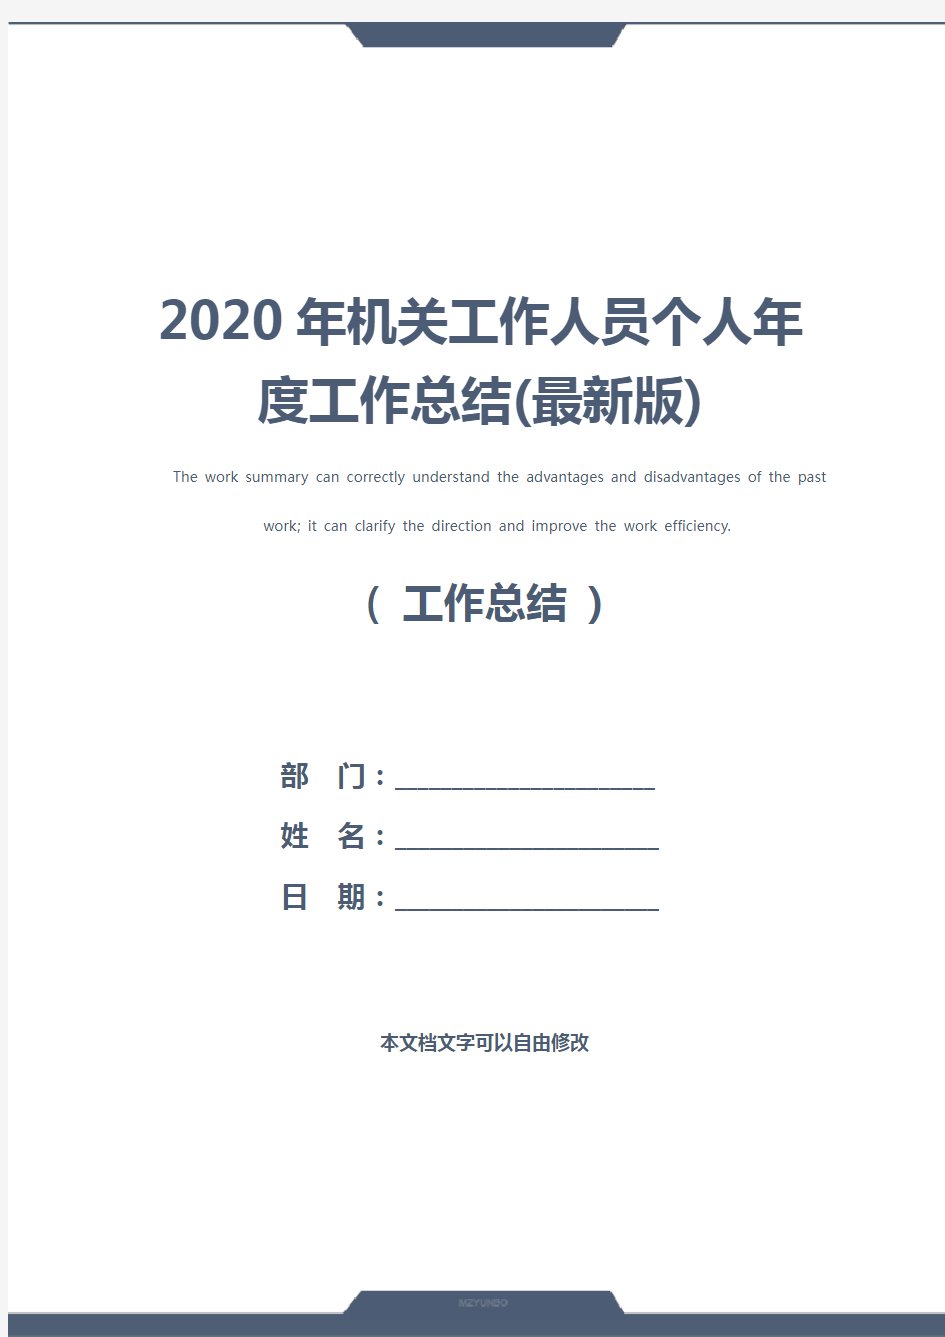 2020年机关工作人员个人年度工作总结(最新版)